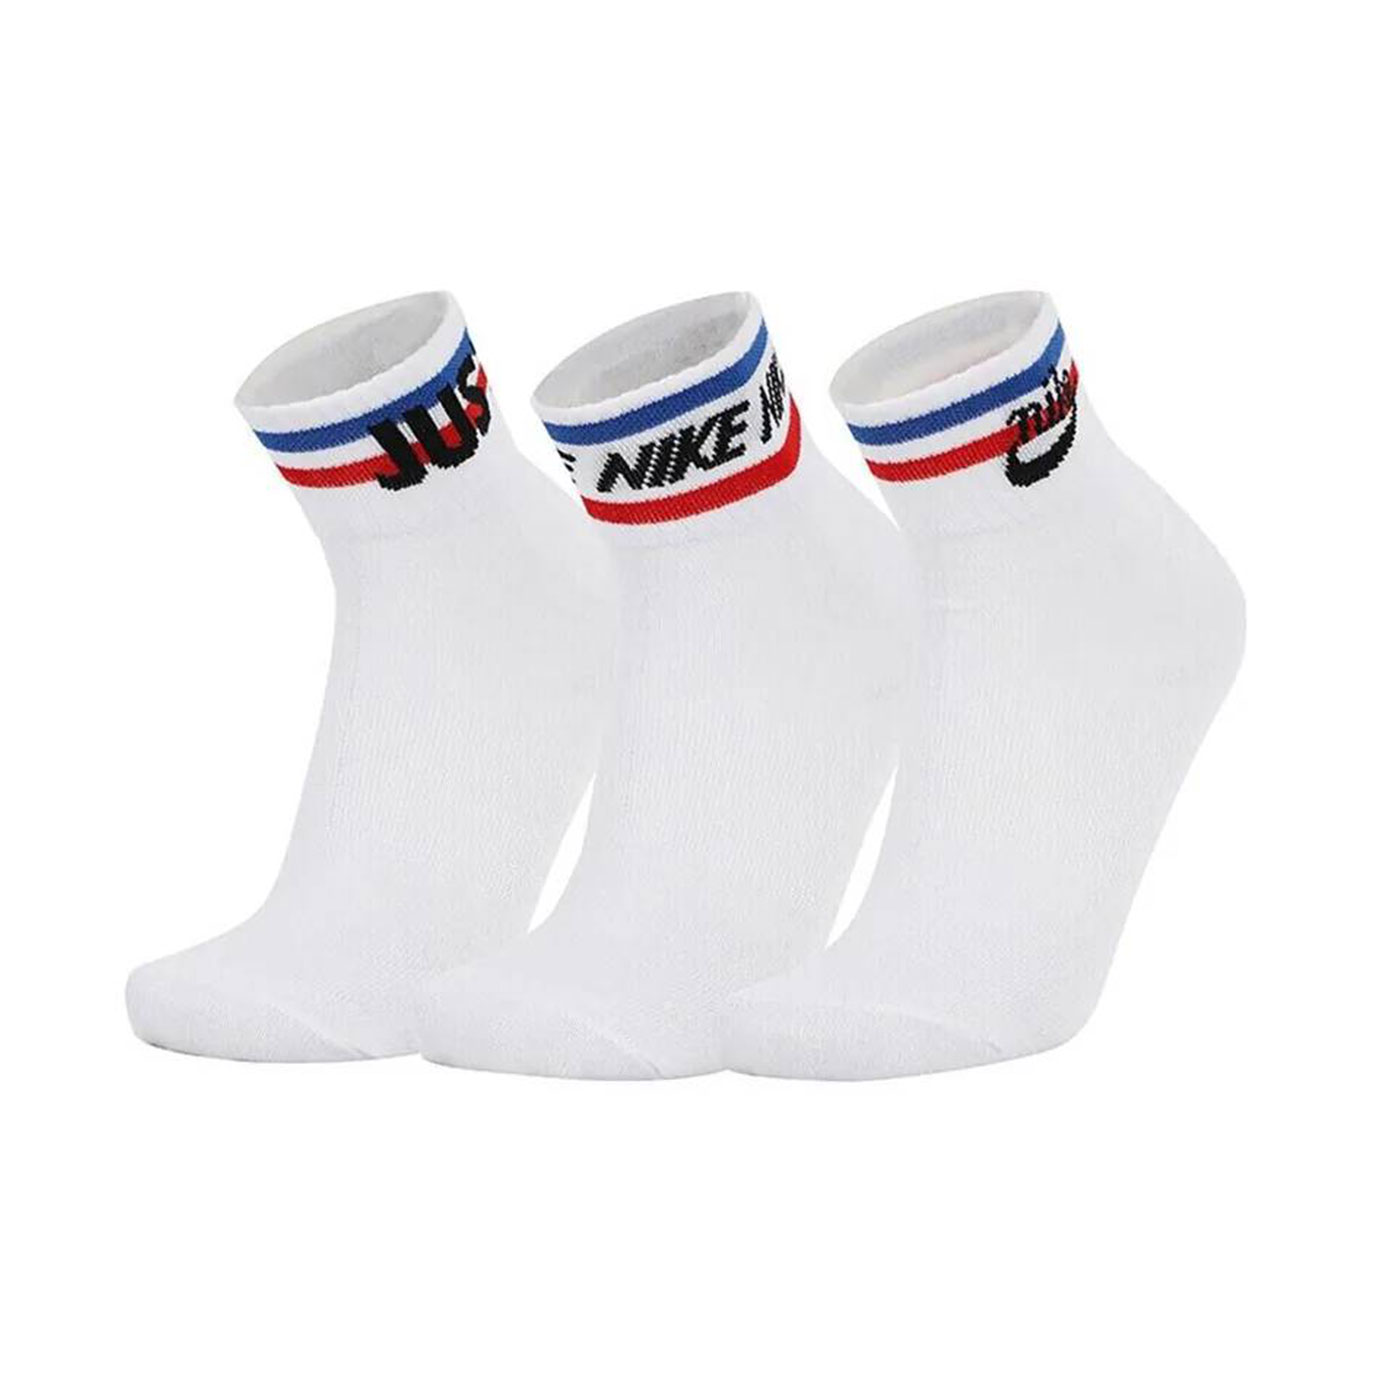 NIKE 運動短襪(三雙入)  DX5080-100 - 白黑藍紅